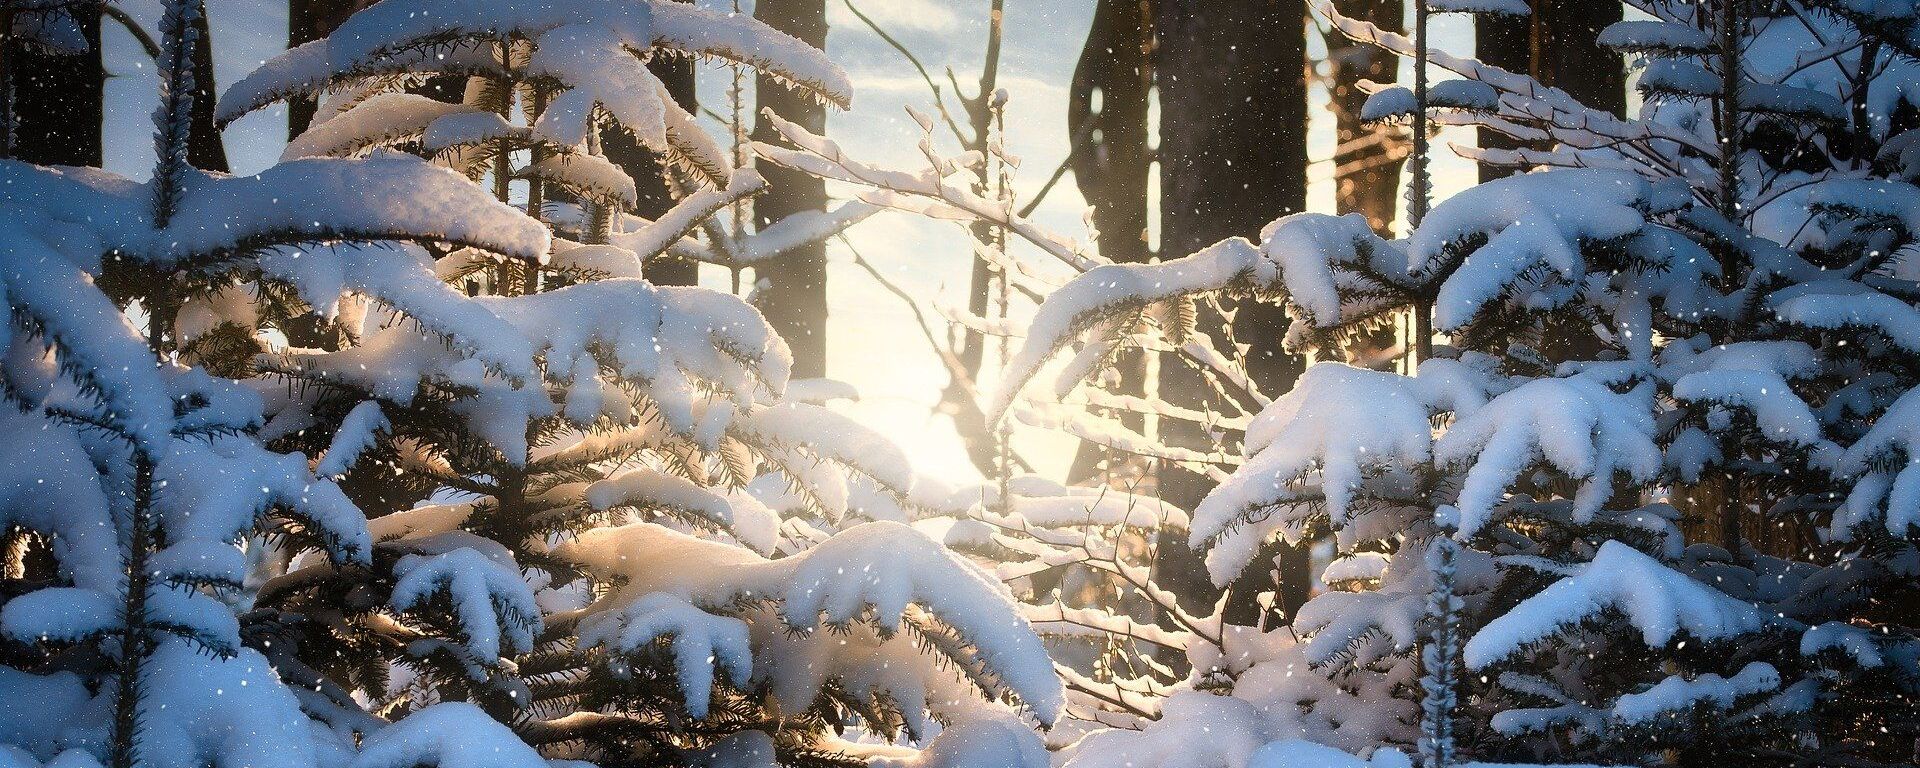 Зимний лес, архивное фото - Sputnik Беларусь, 1920, 15.02.2021